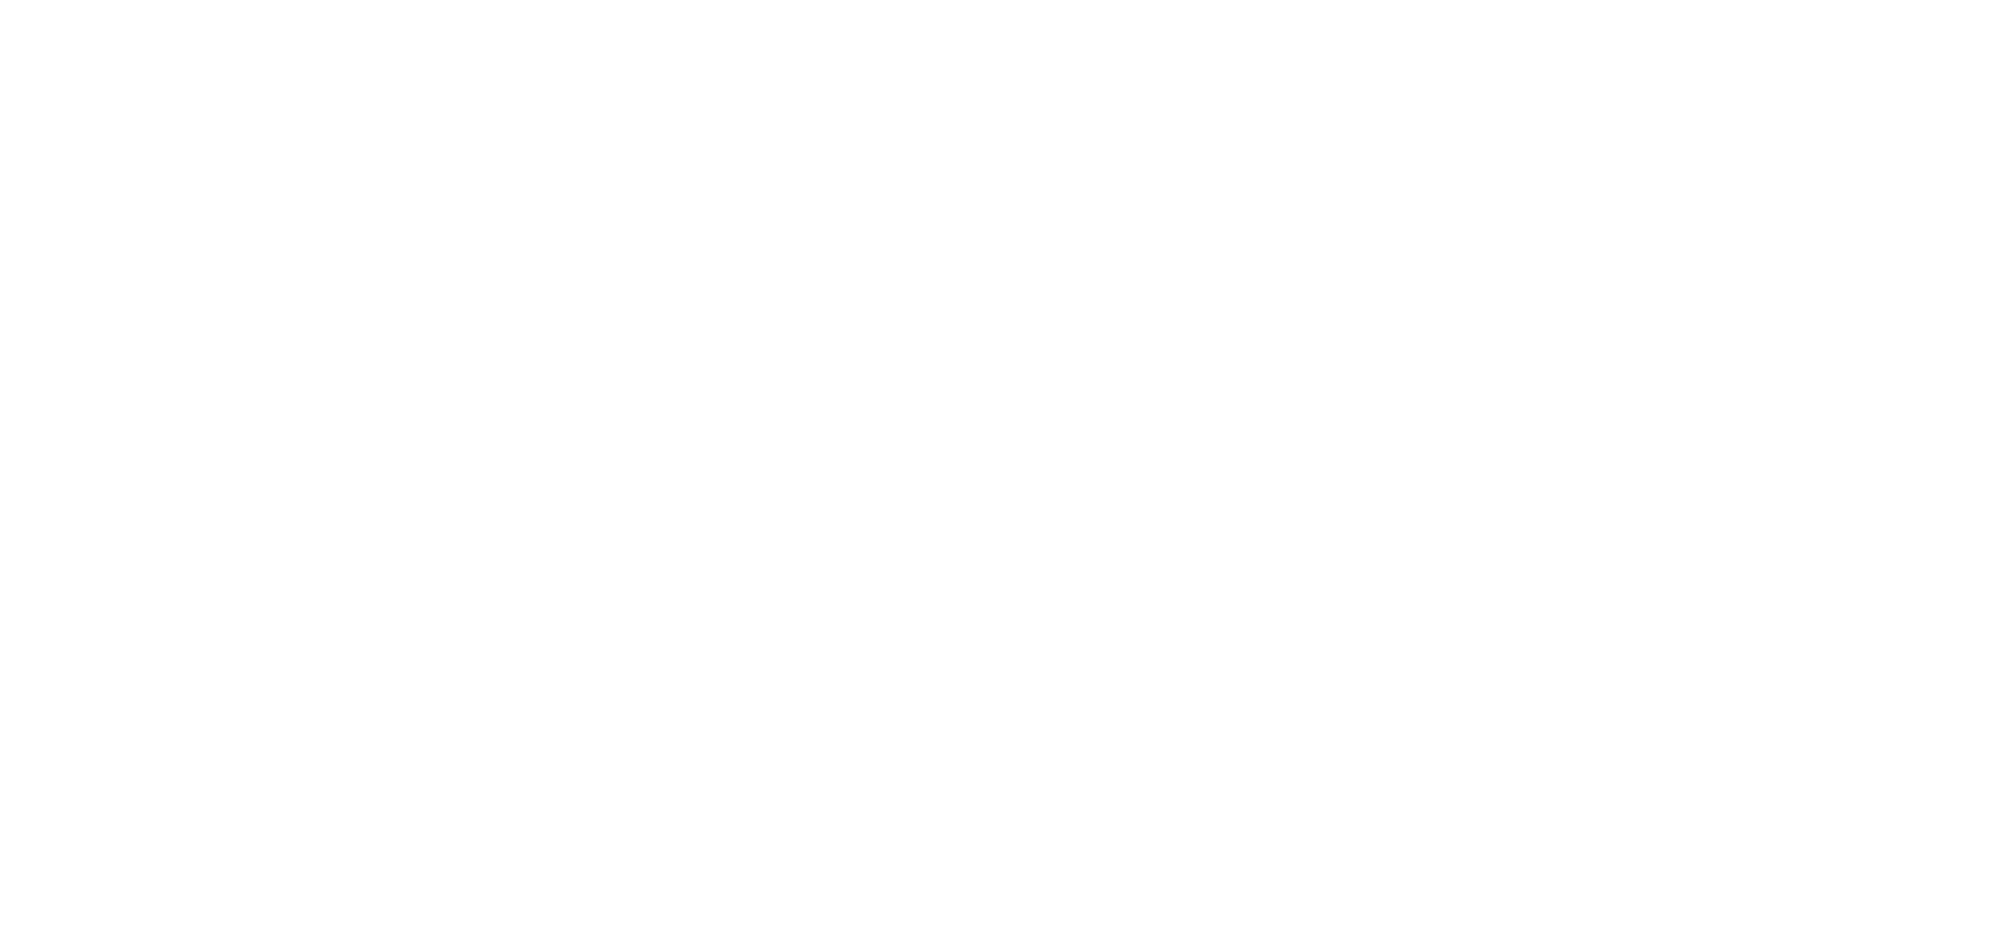 Katz-Digital-Video-Logo-White